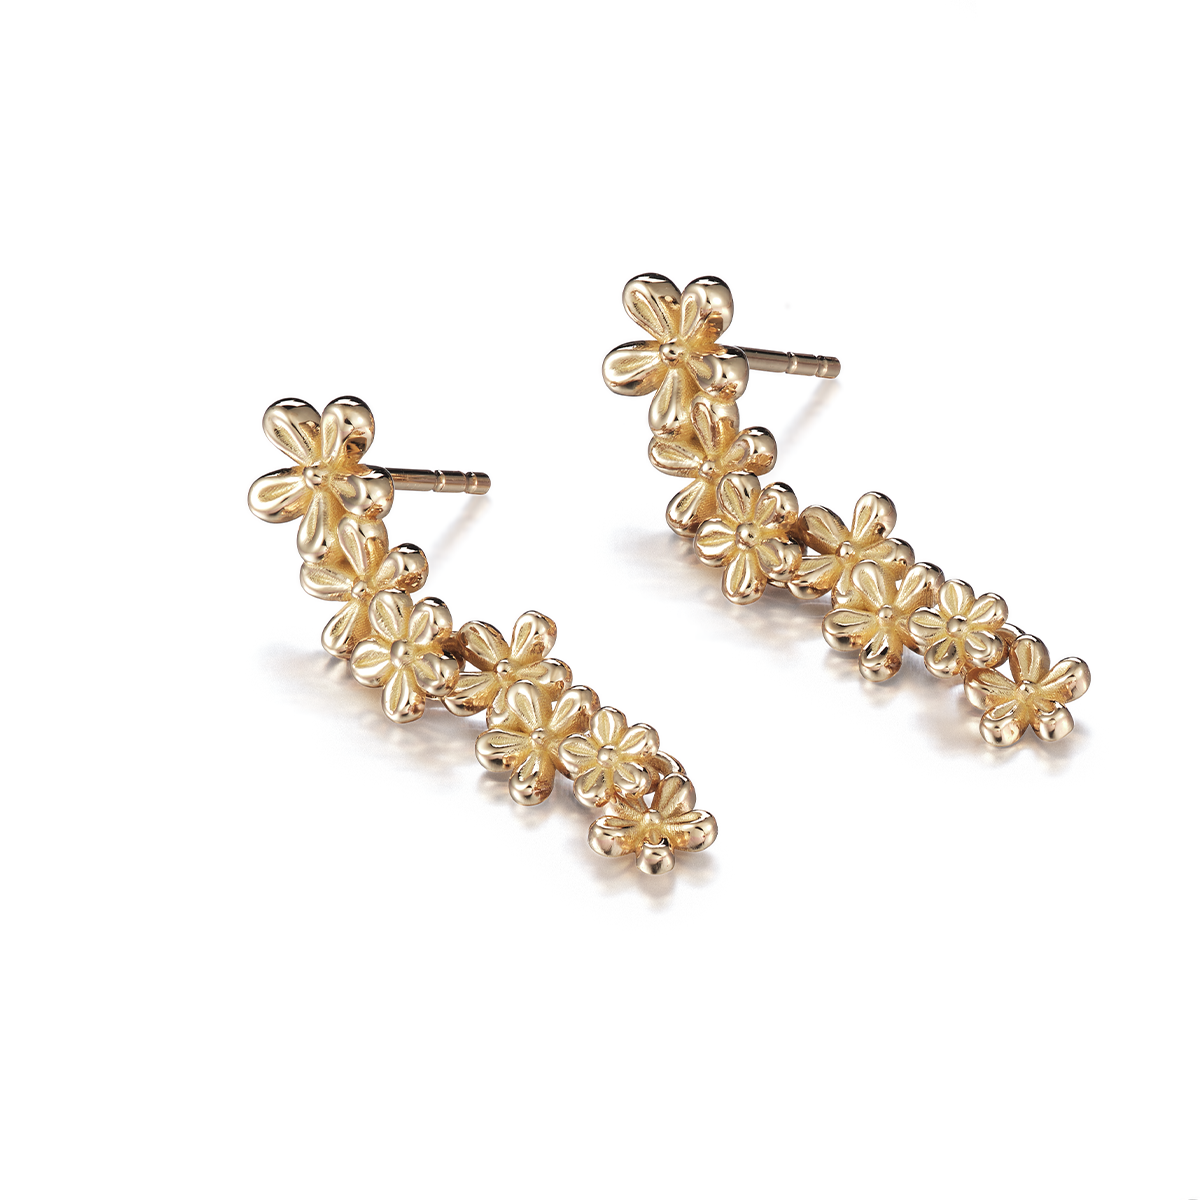 Juuret - Roots: Golden garland stud earrings